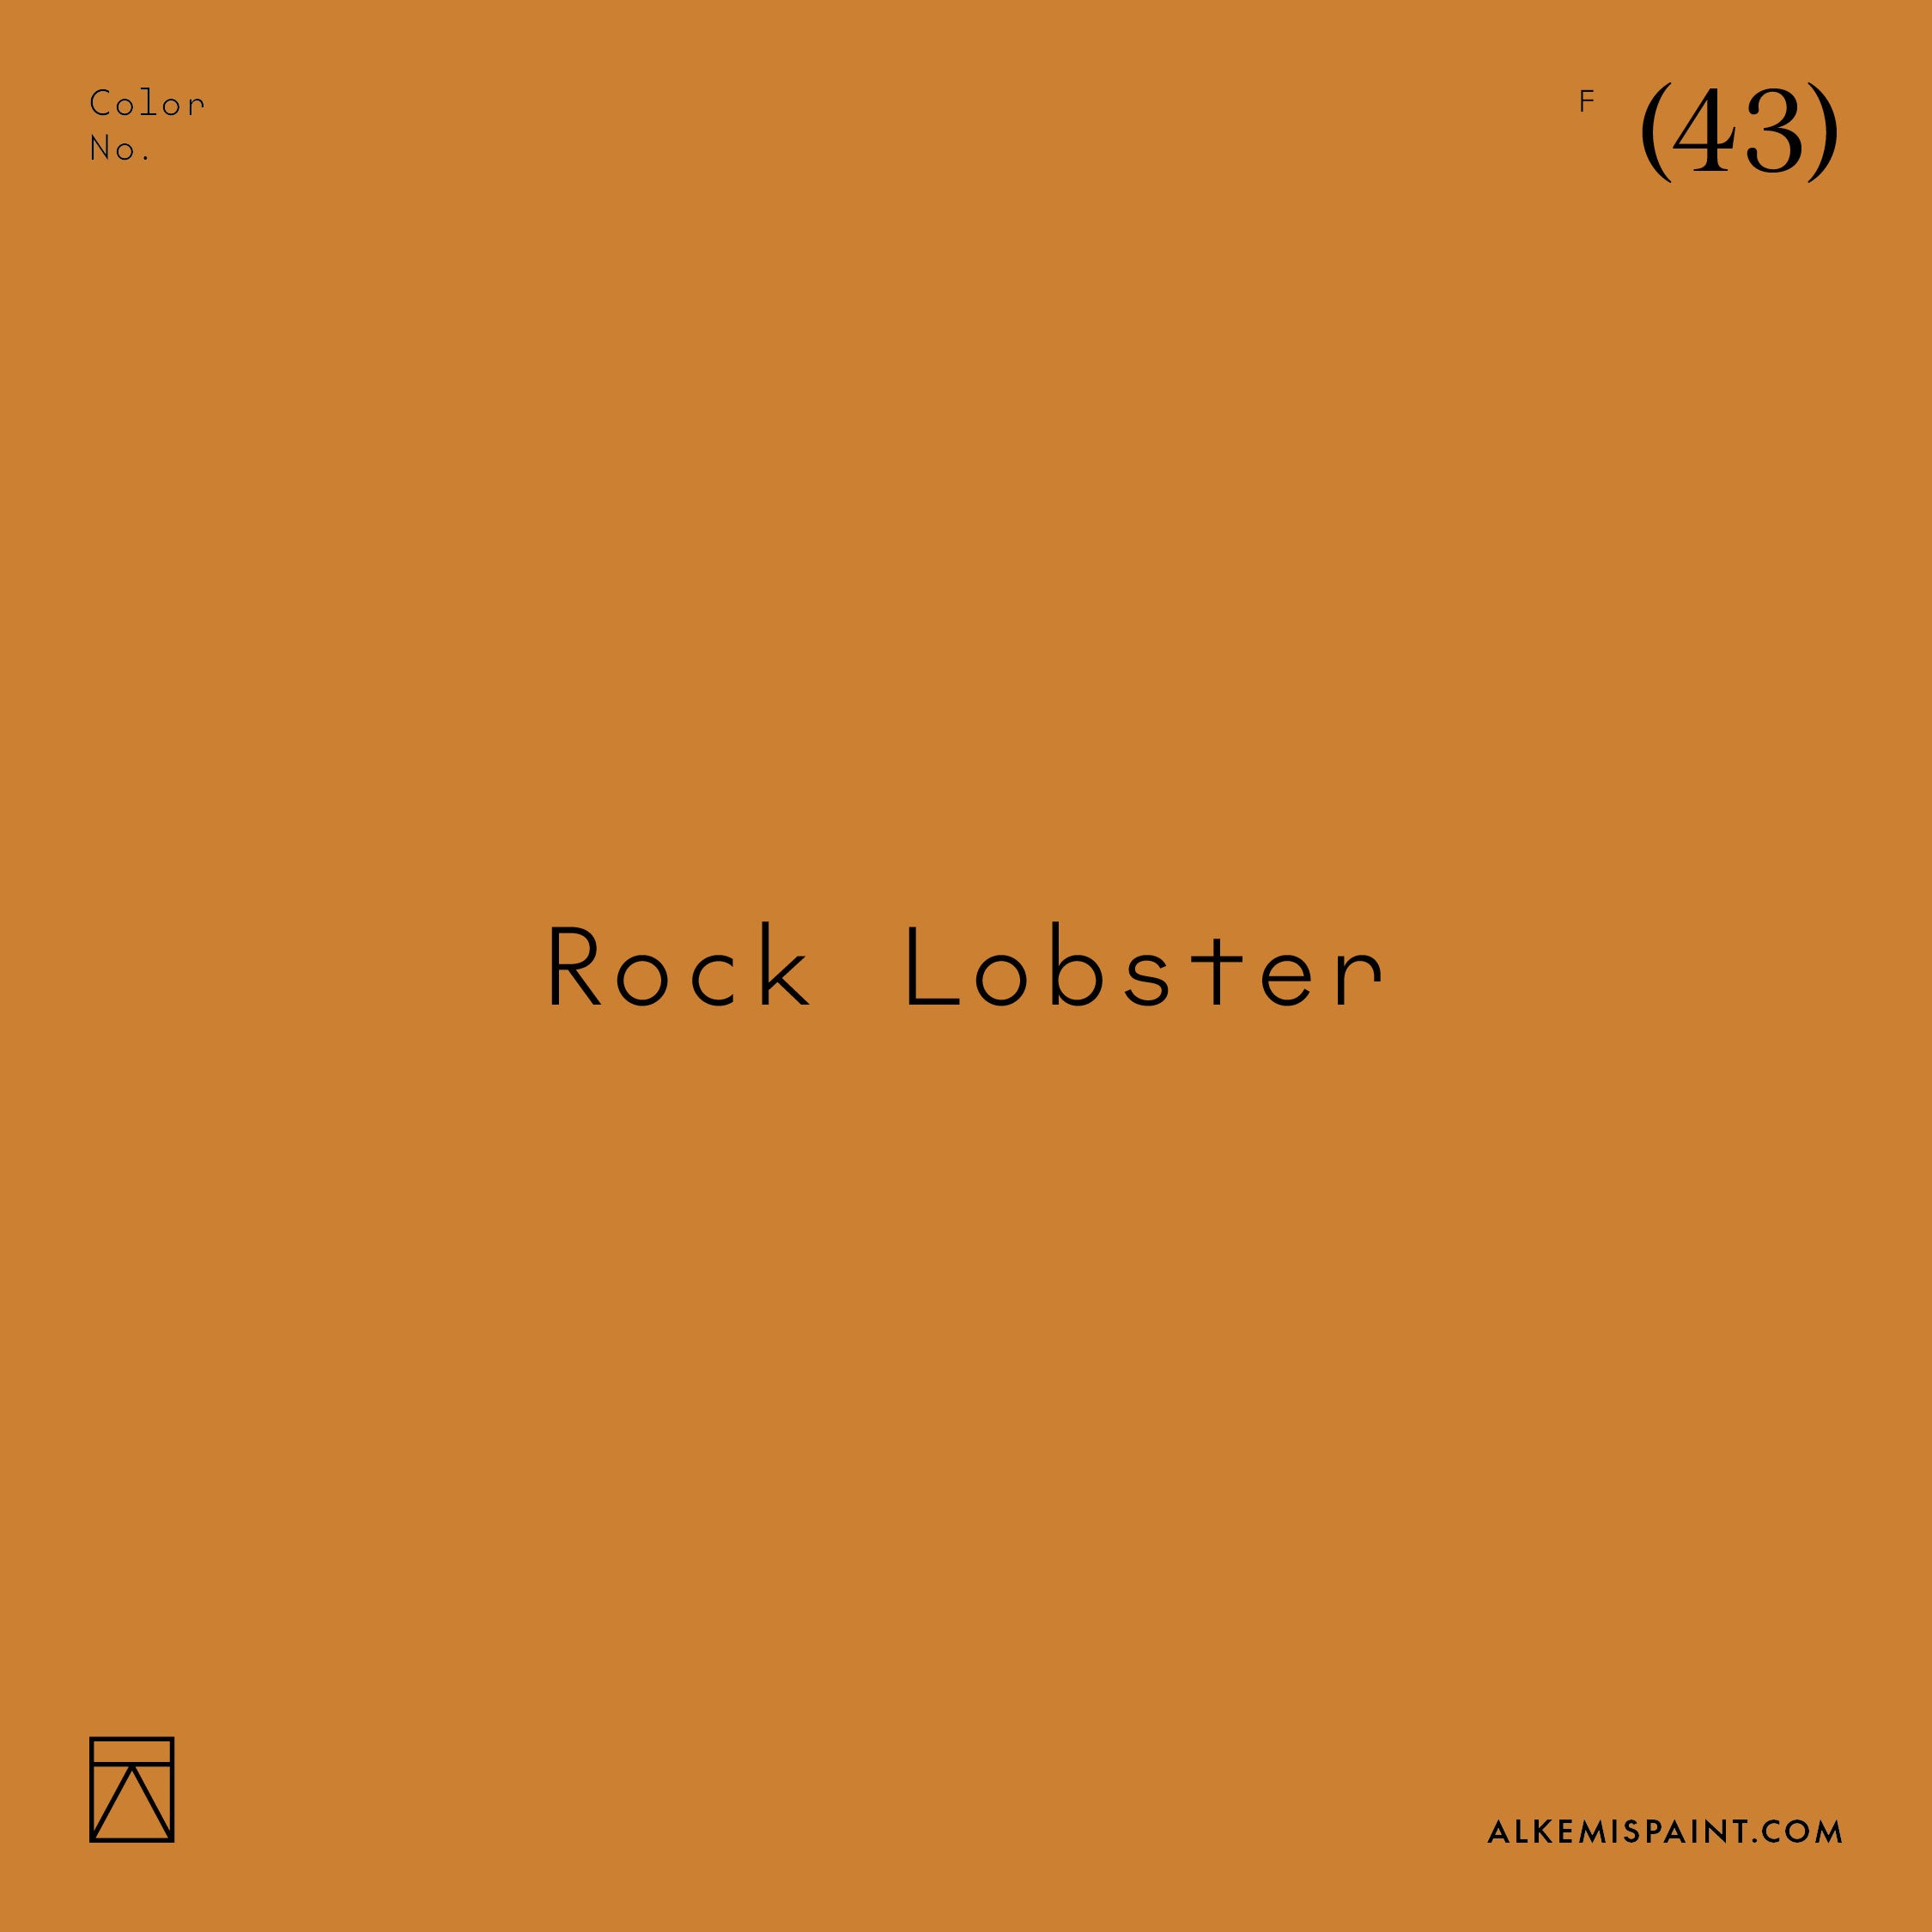 Rock Lobster (43)